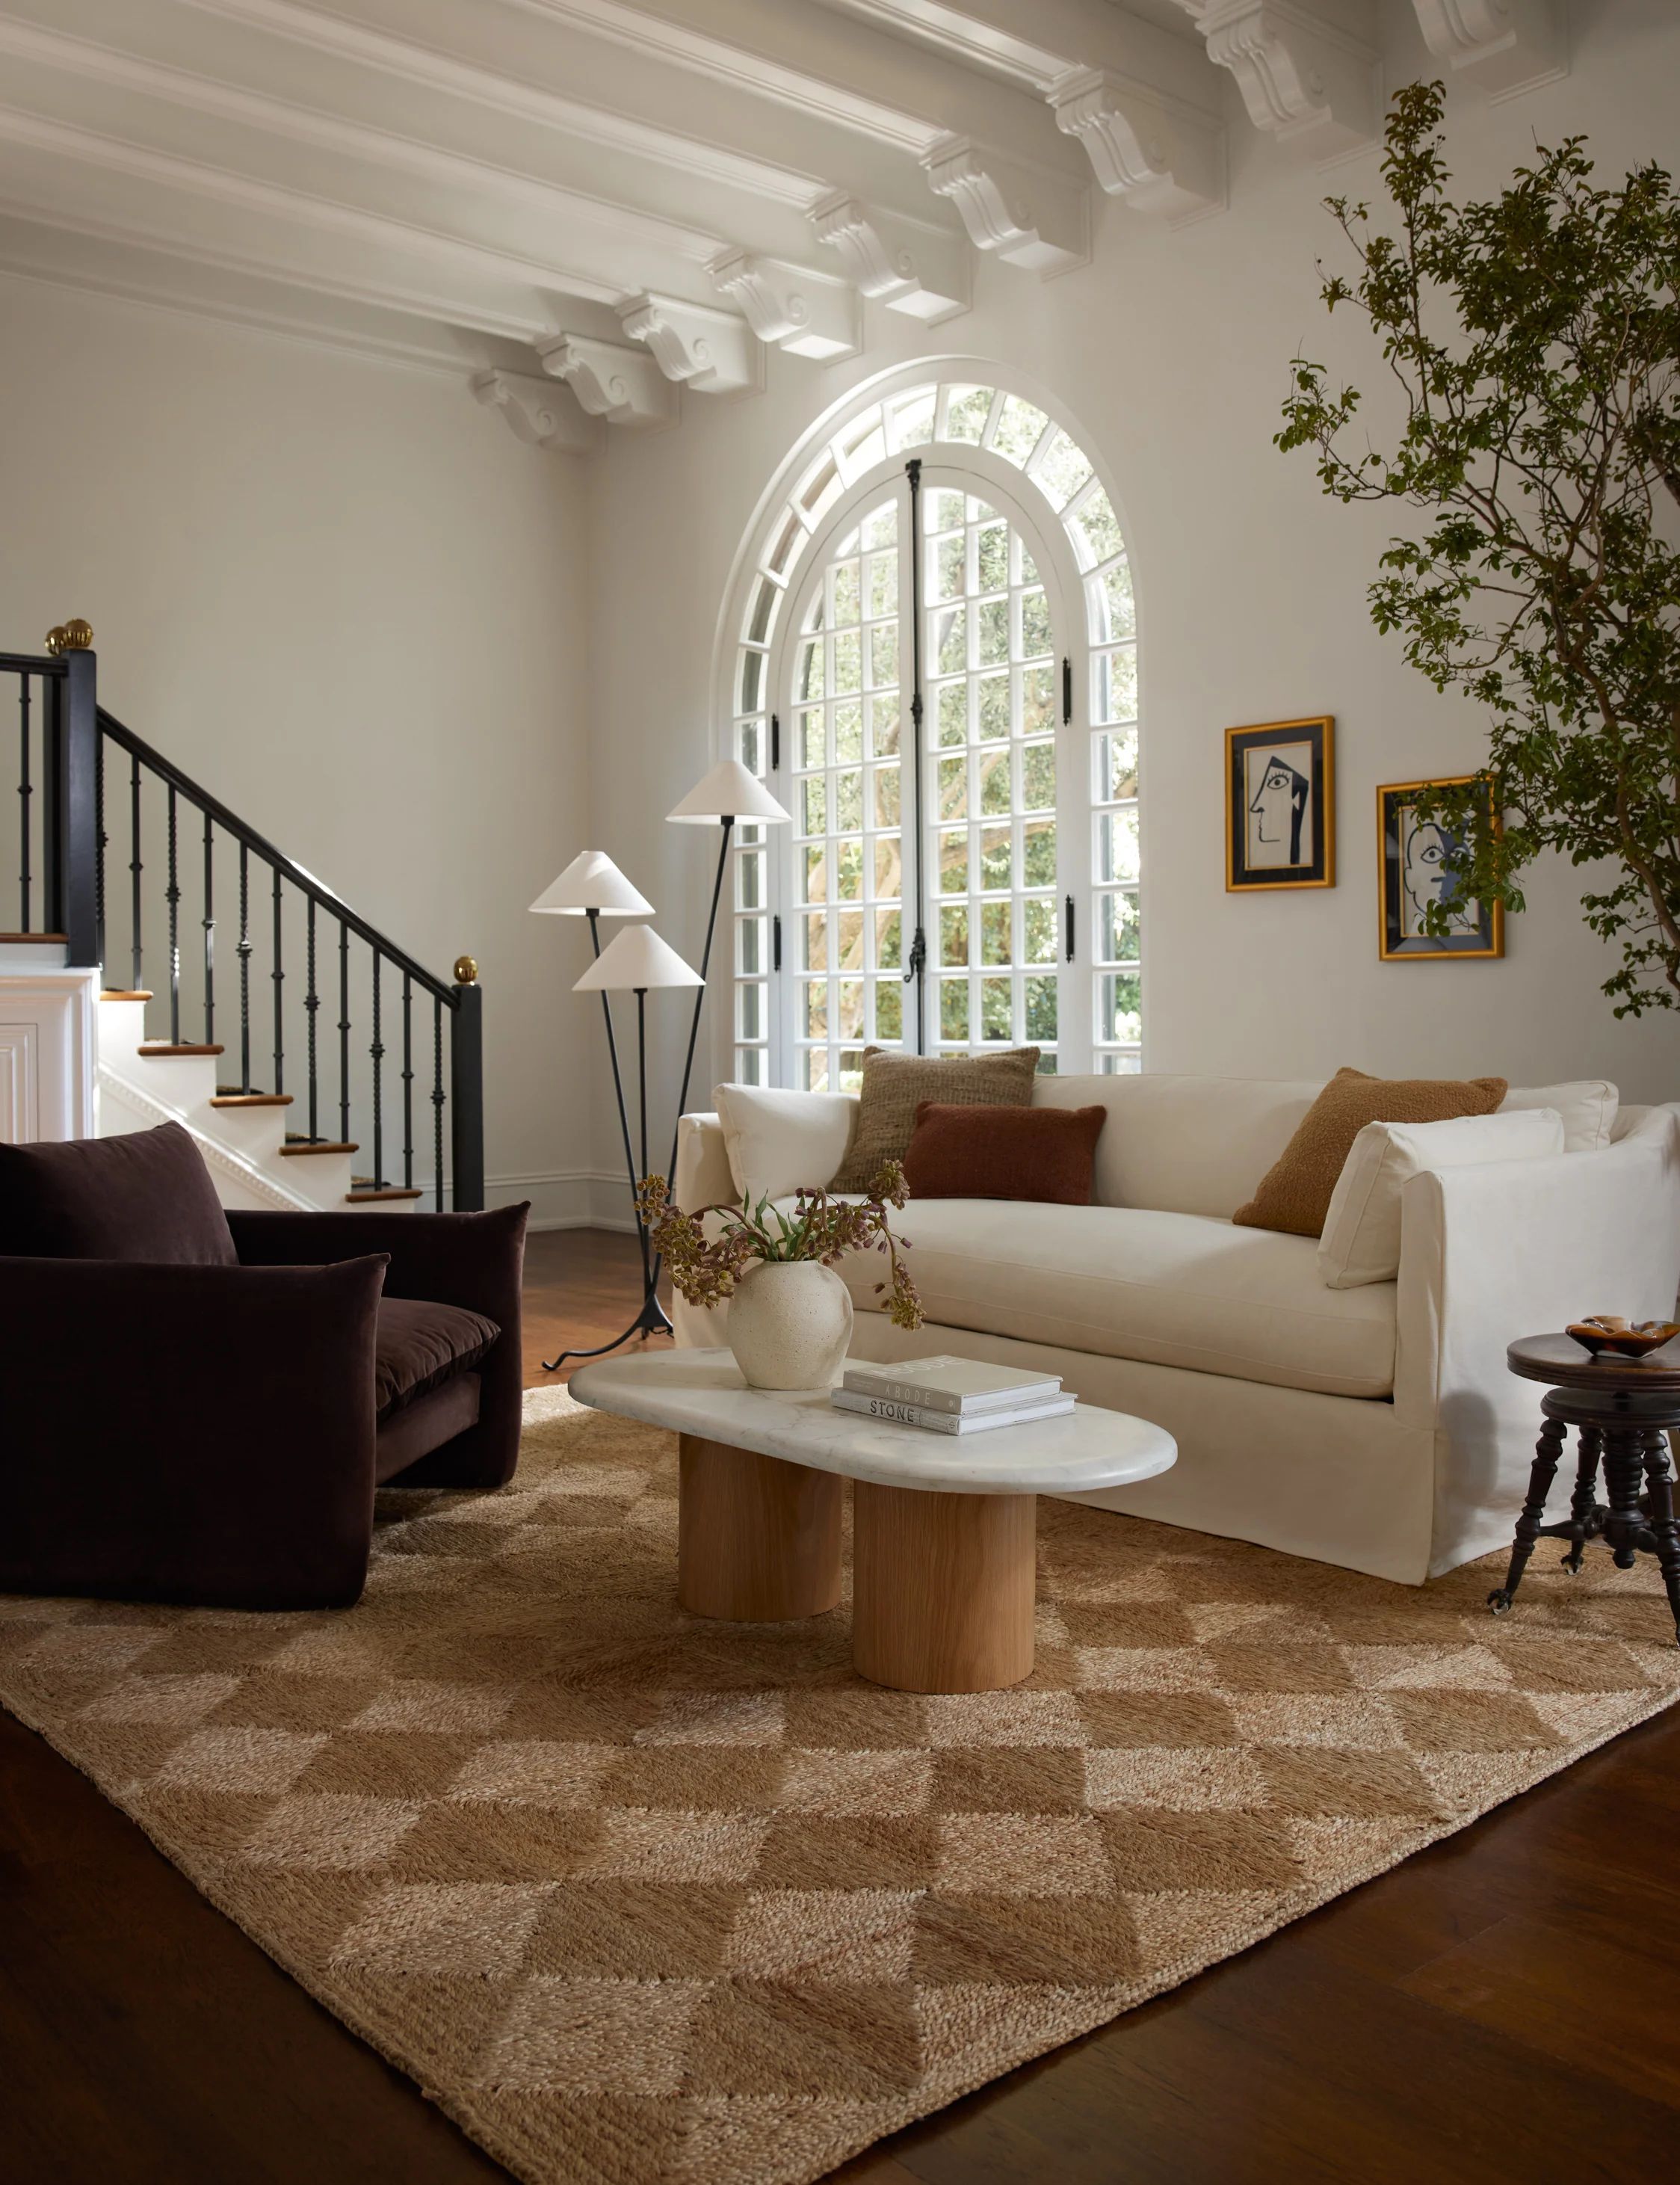 Runner carpet natural jute rug hand woven braided beige color for Living  Room